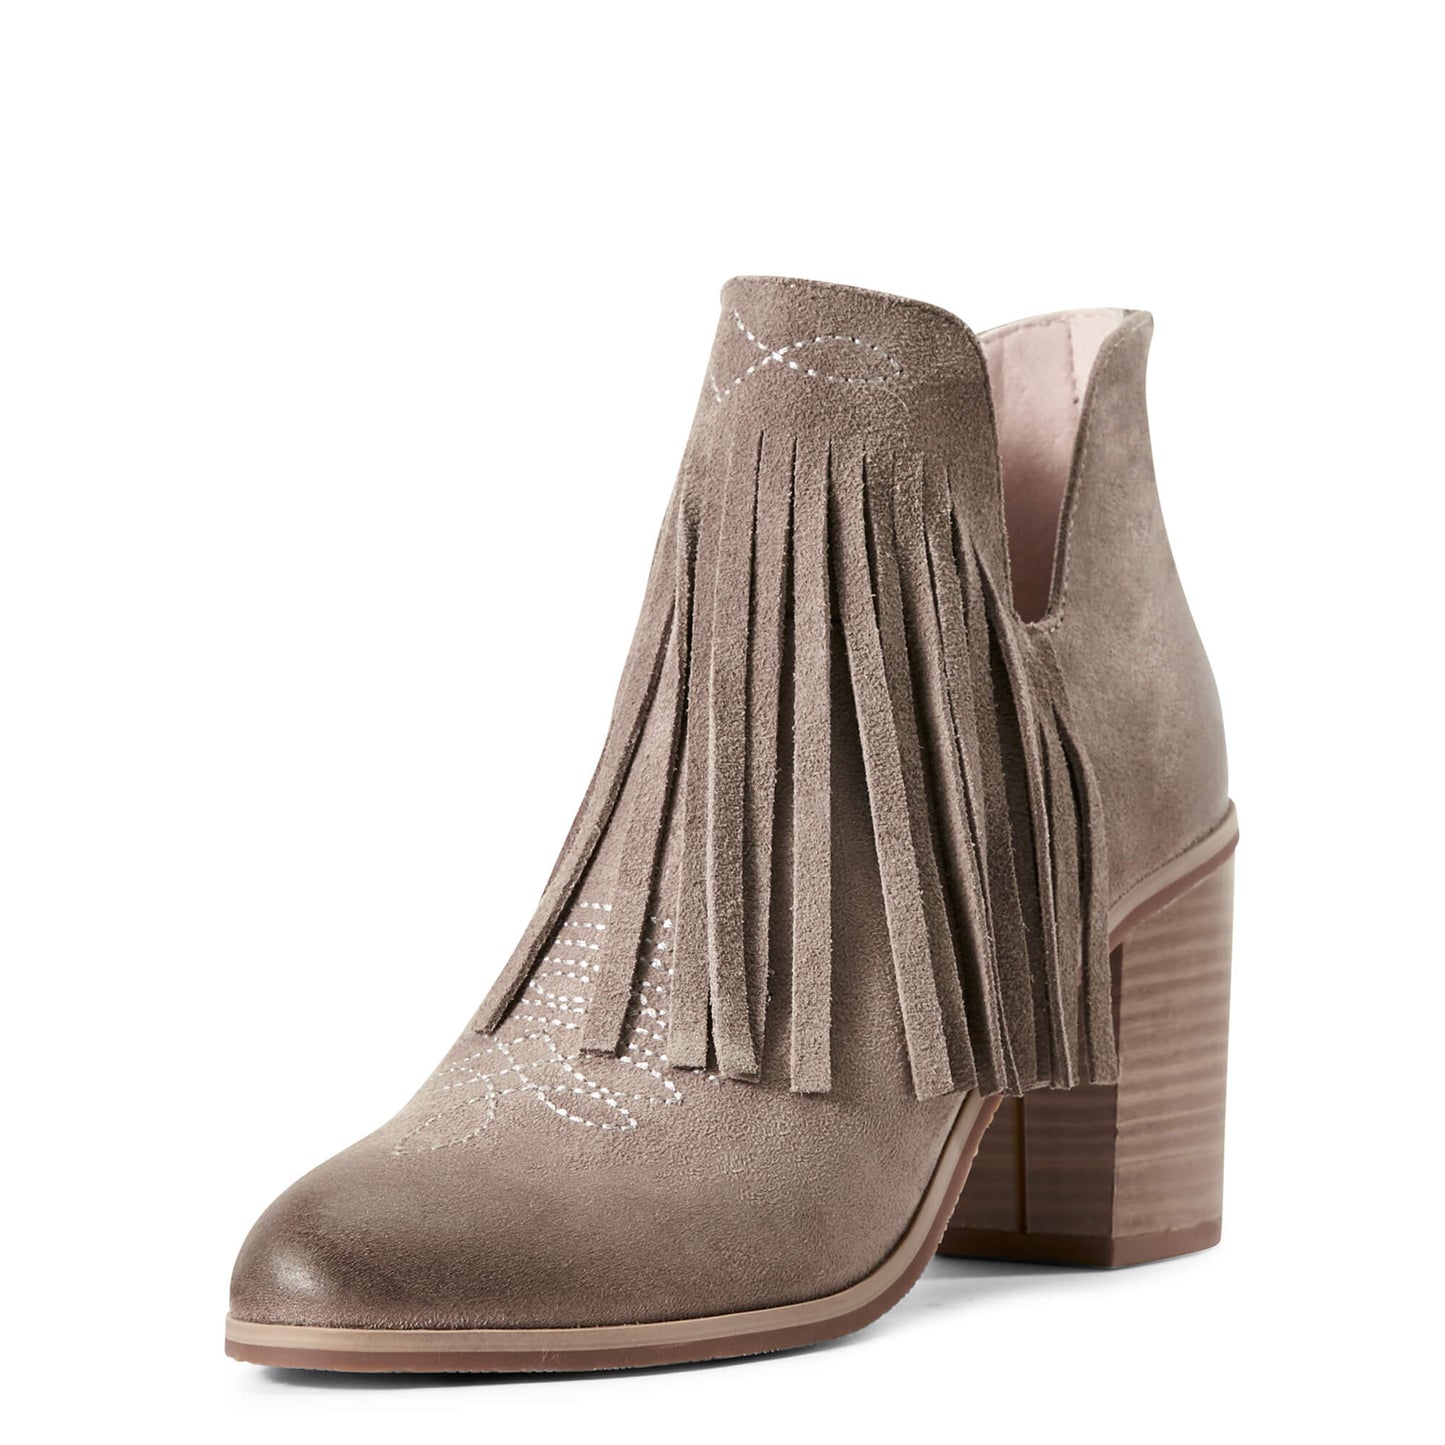 Women's Ariat Unbridled Jaxon Grey Suede Boots